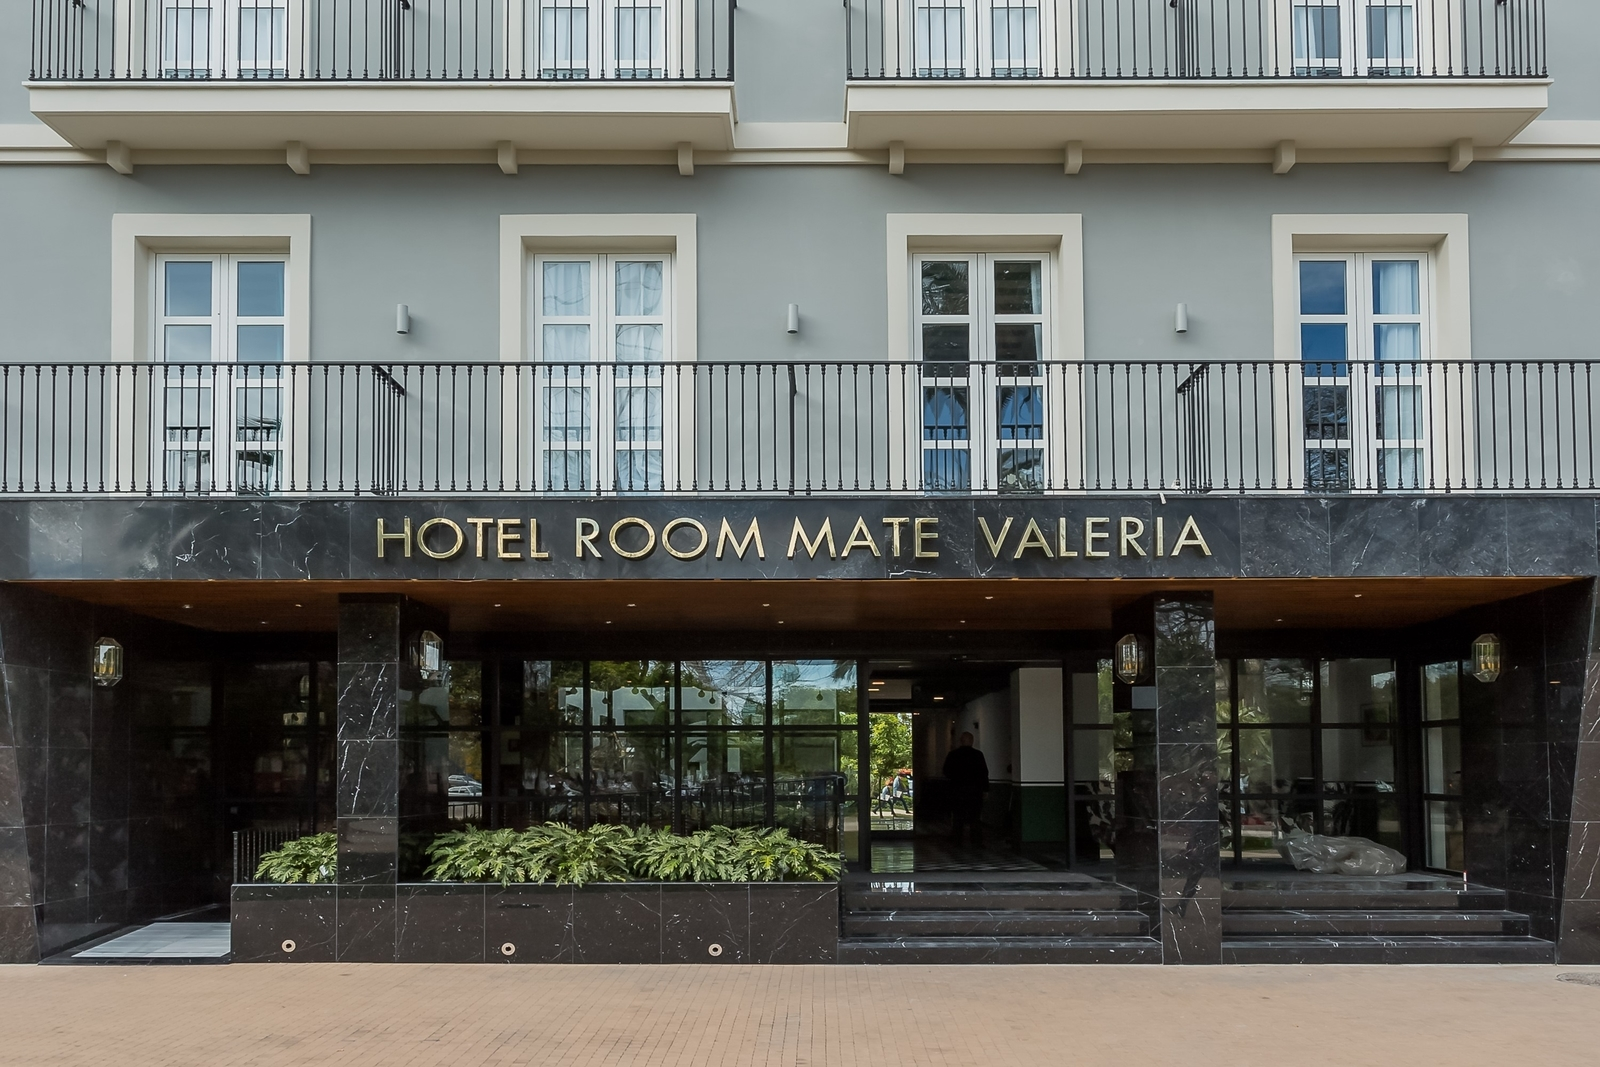 2-Room-Mate-Valeria-hotel